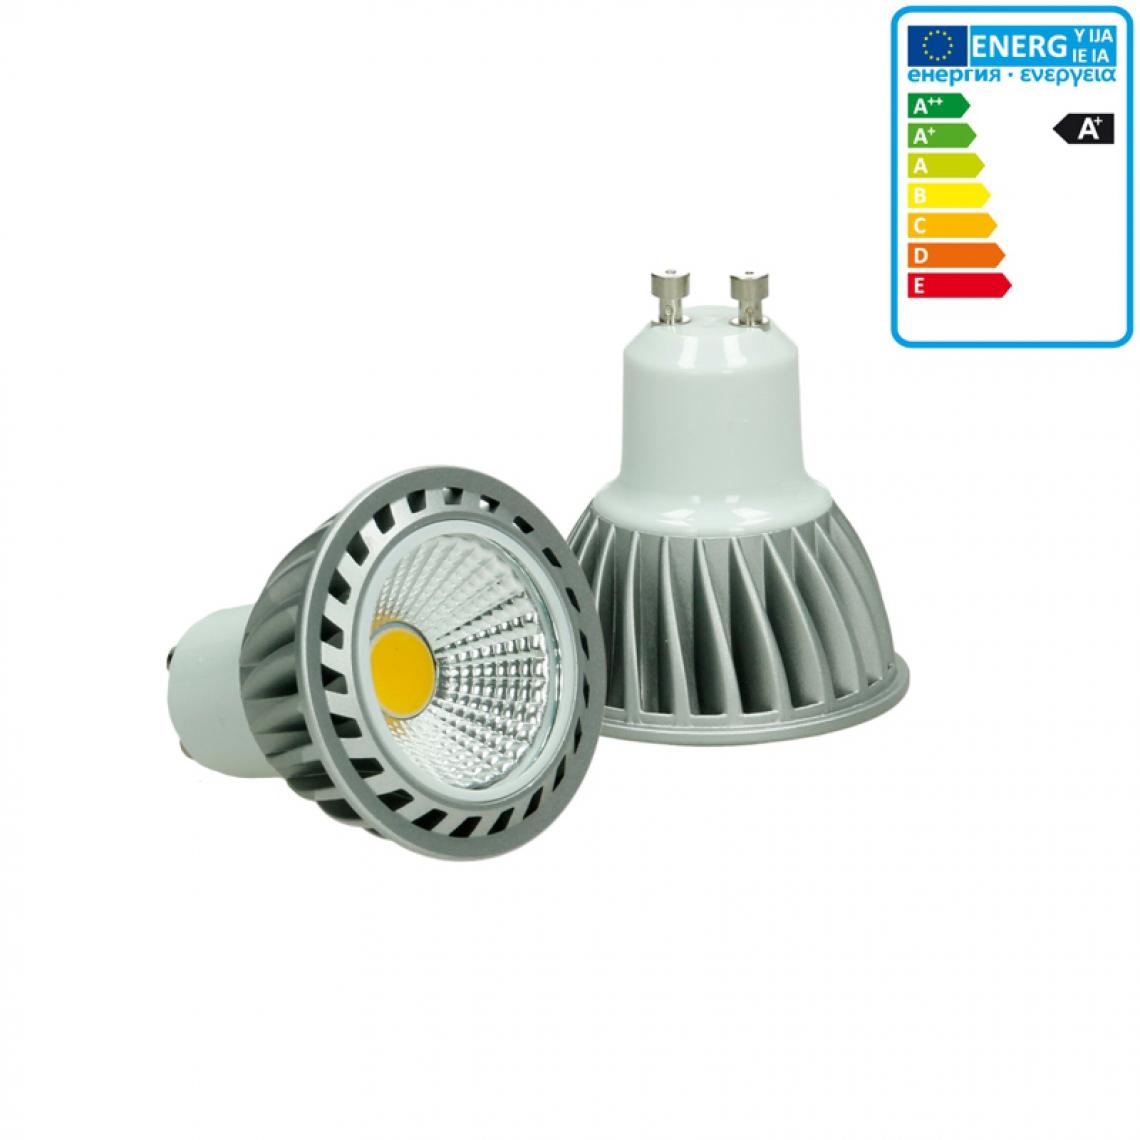 Ecd Germany - ECD Germany COB GU10 Ampoule Lampe Spot Lumière 4W Blanc Froid - Ampoules LED